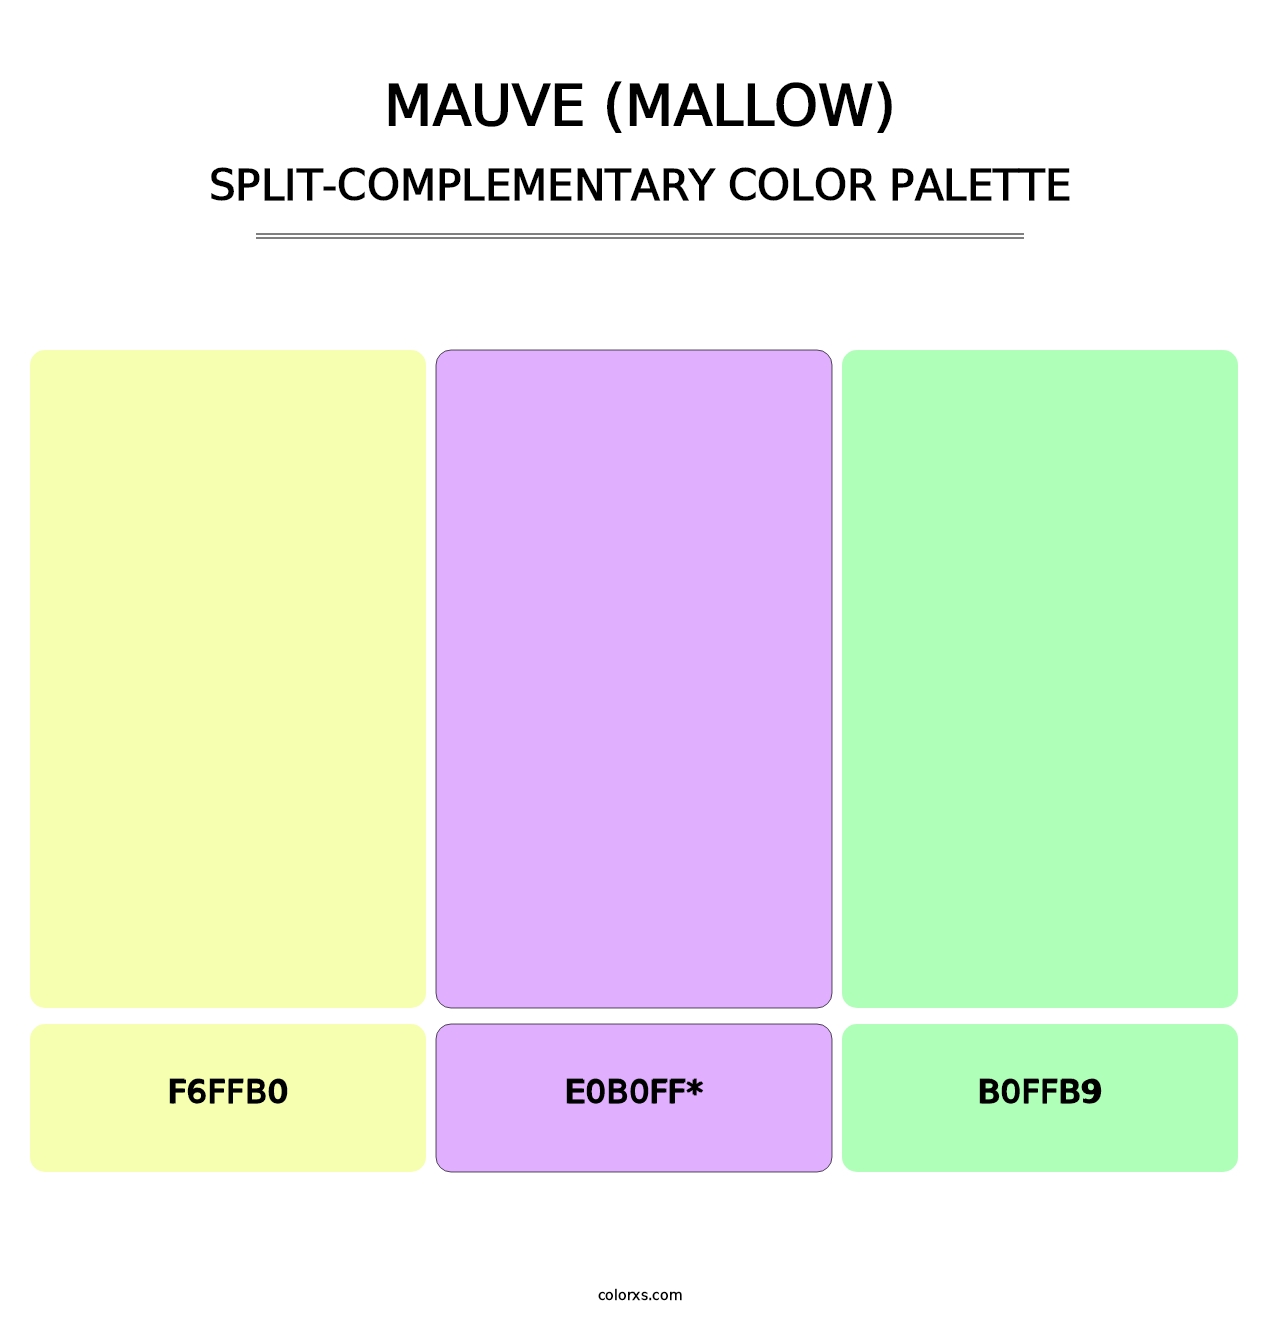 Mauve (Mallow) - Split-Complementary Color Palette